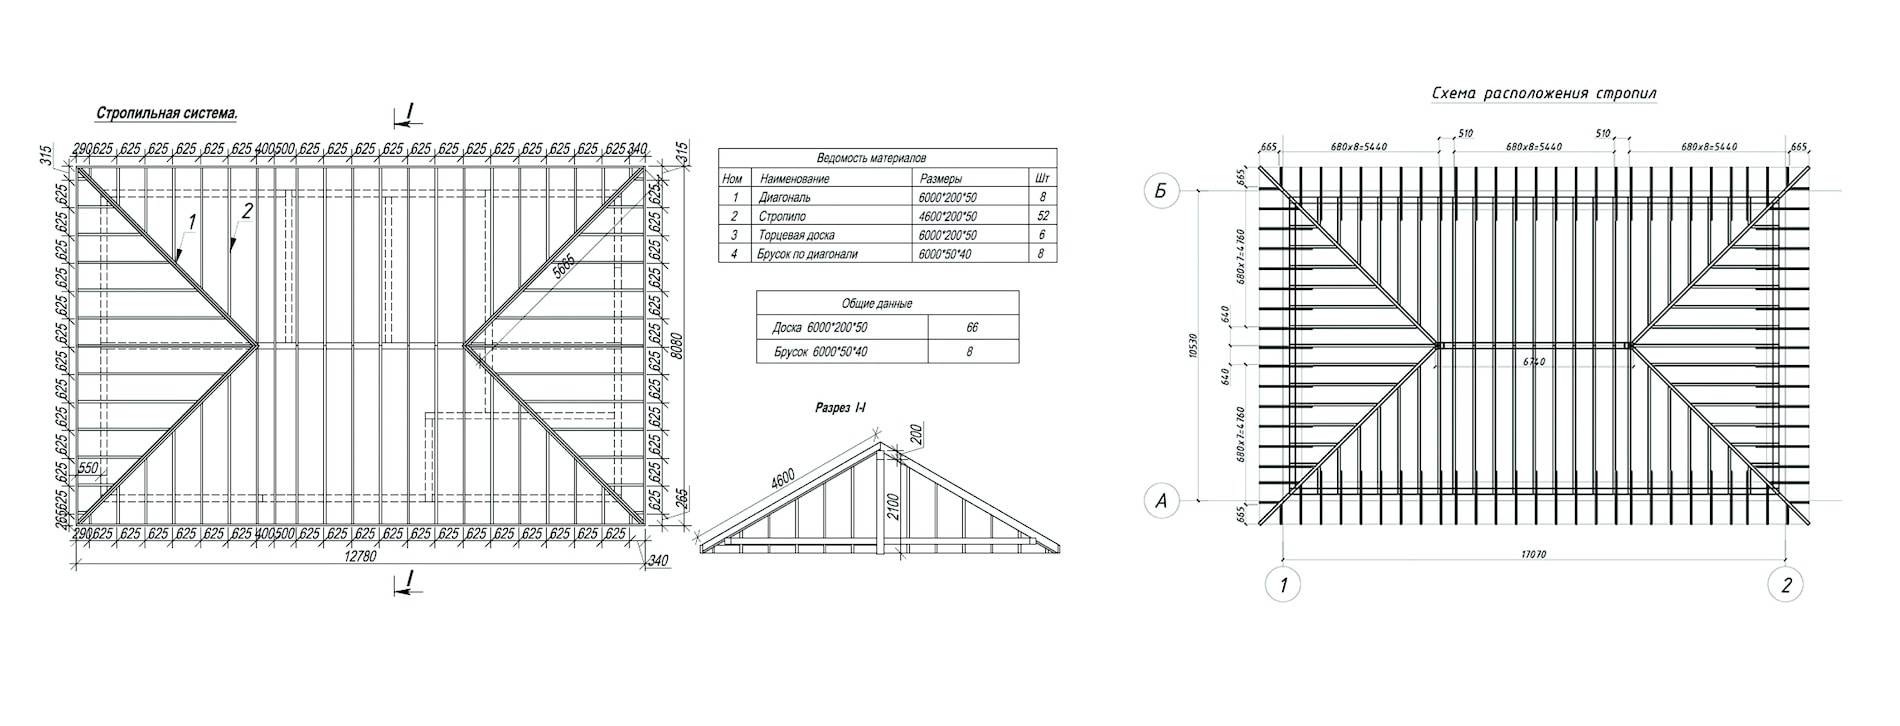 Расчет вальмовой крыши - онлайн калькулятор с чертежами и фото + расчет стропильной системы и площади четырехскатной крыши